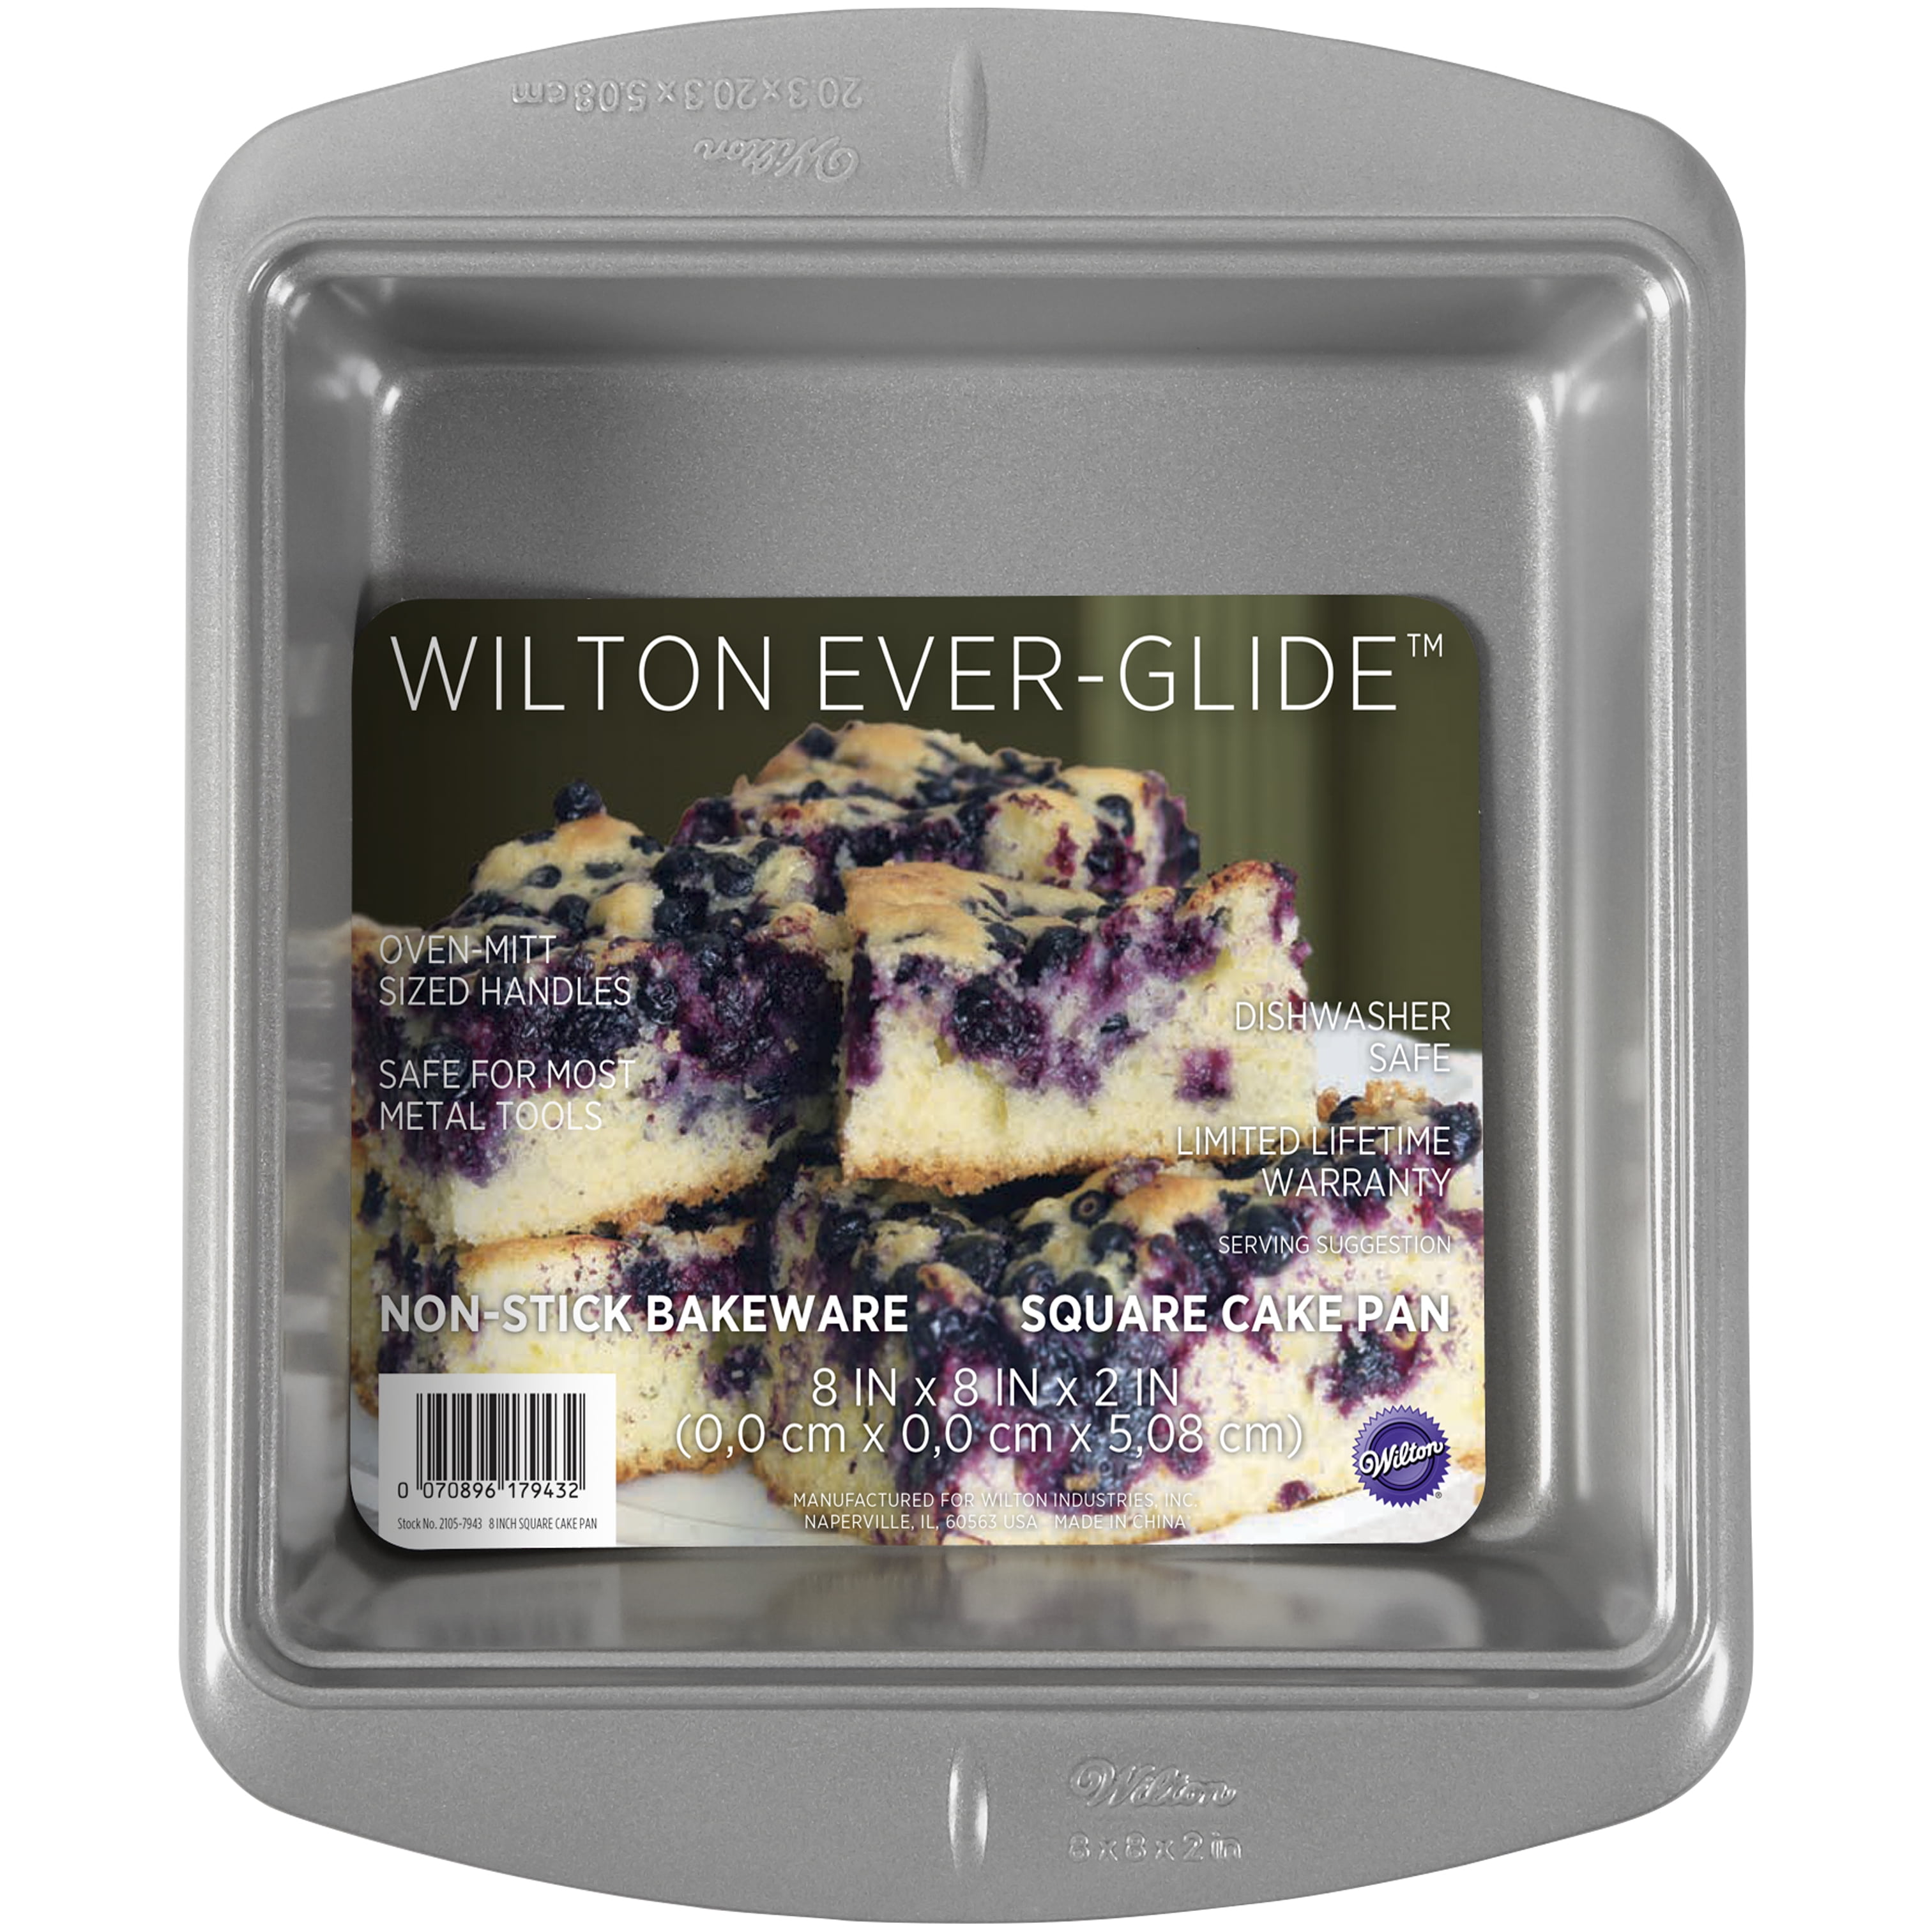 Wilton 191002912 8 By 8 By 2 Square Cake Pan: Cake Pans & Baking